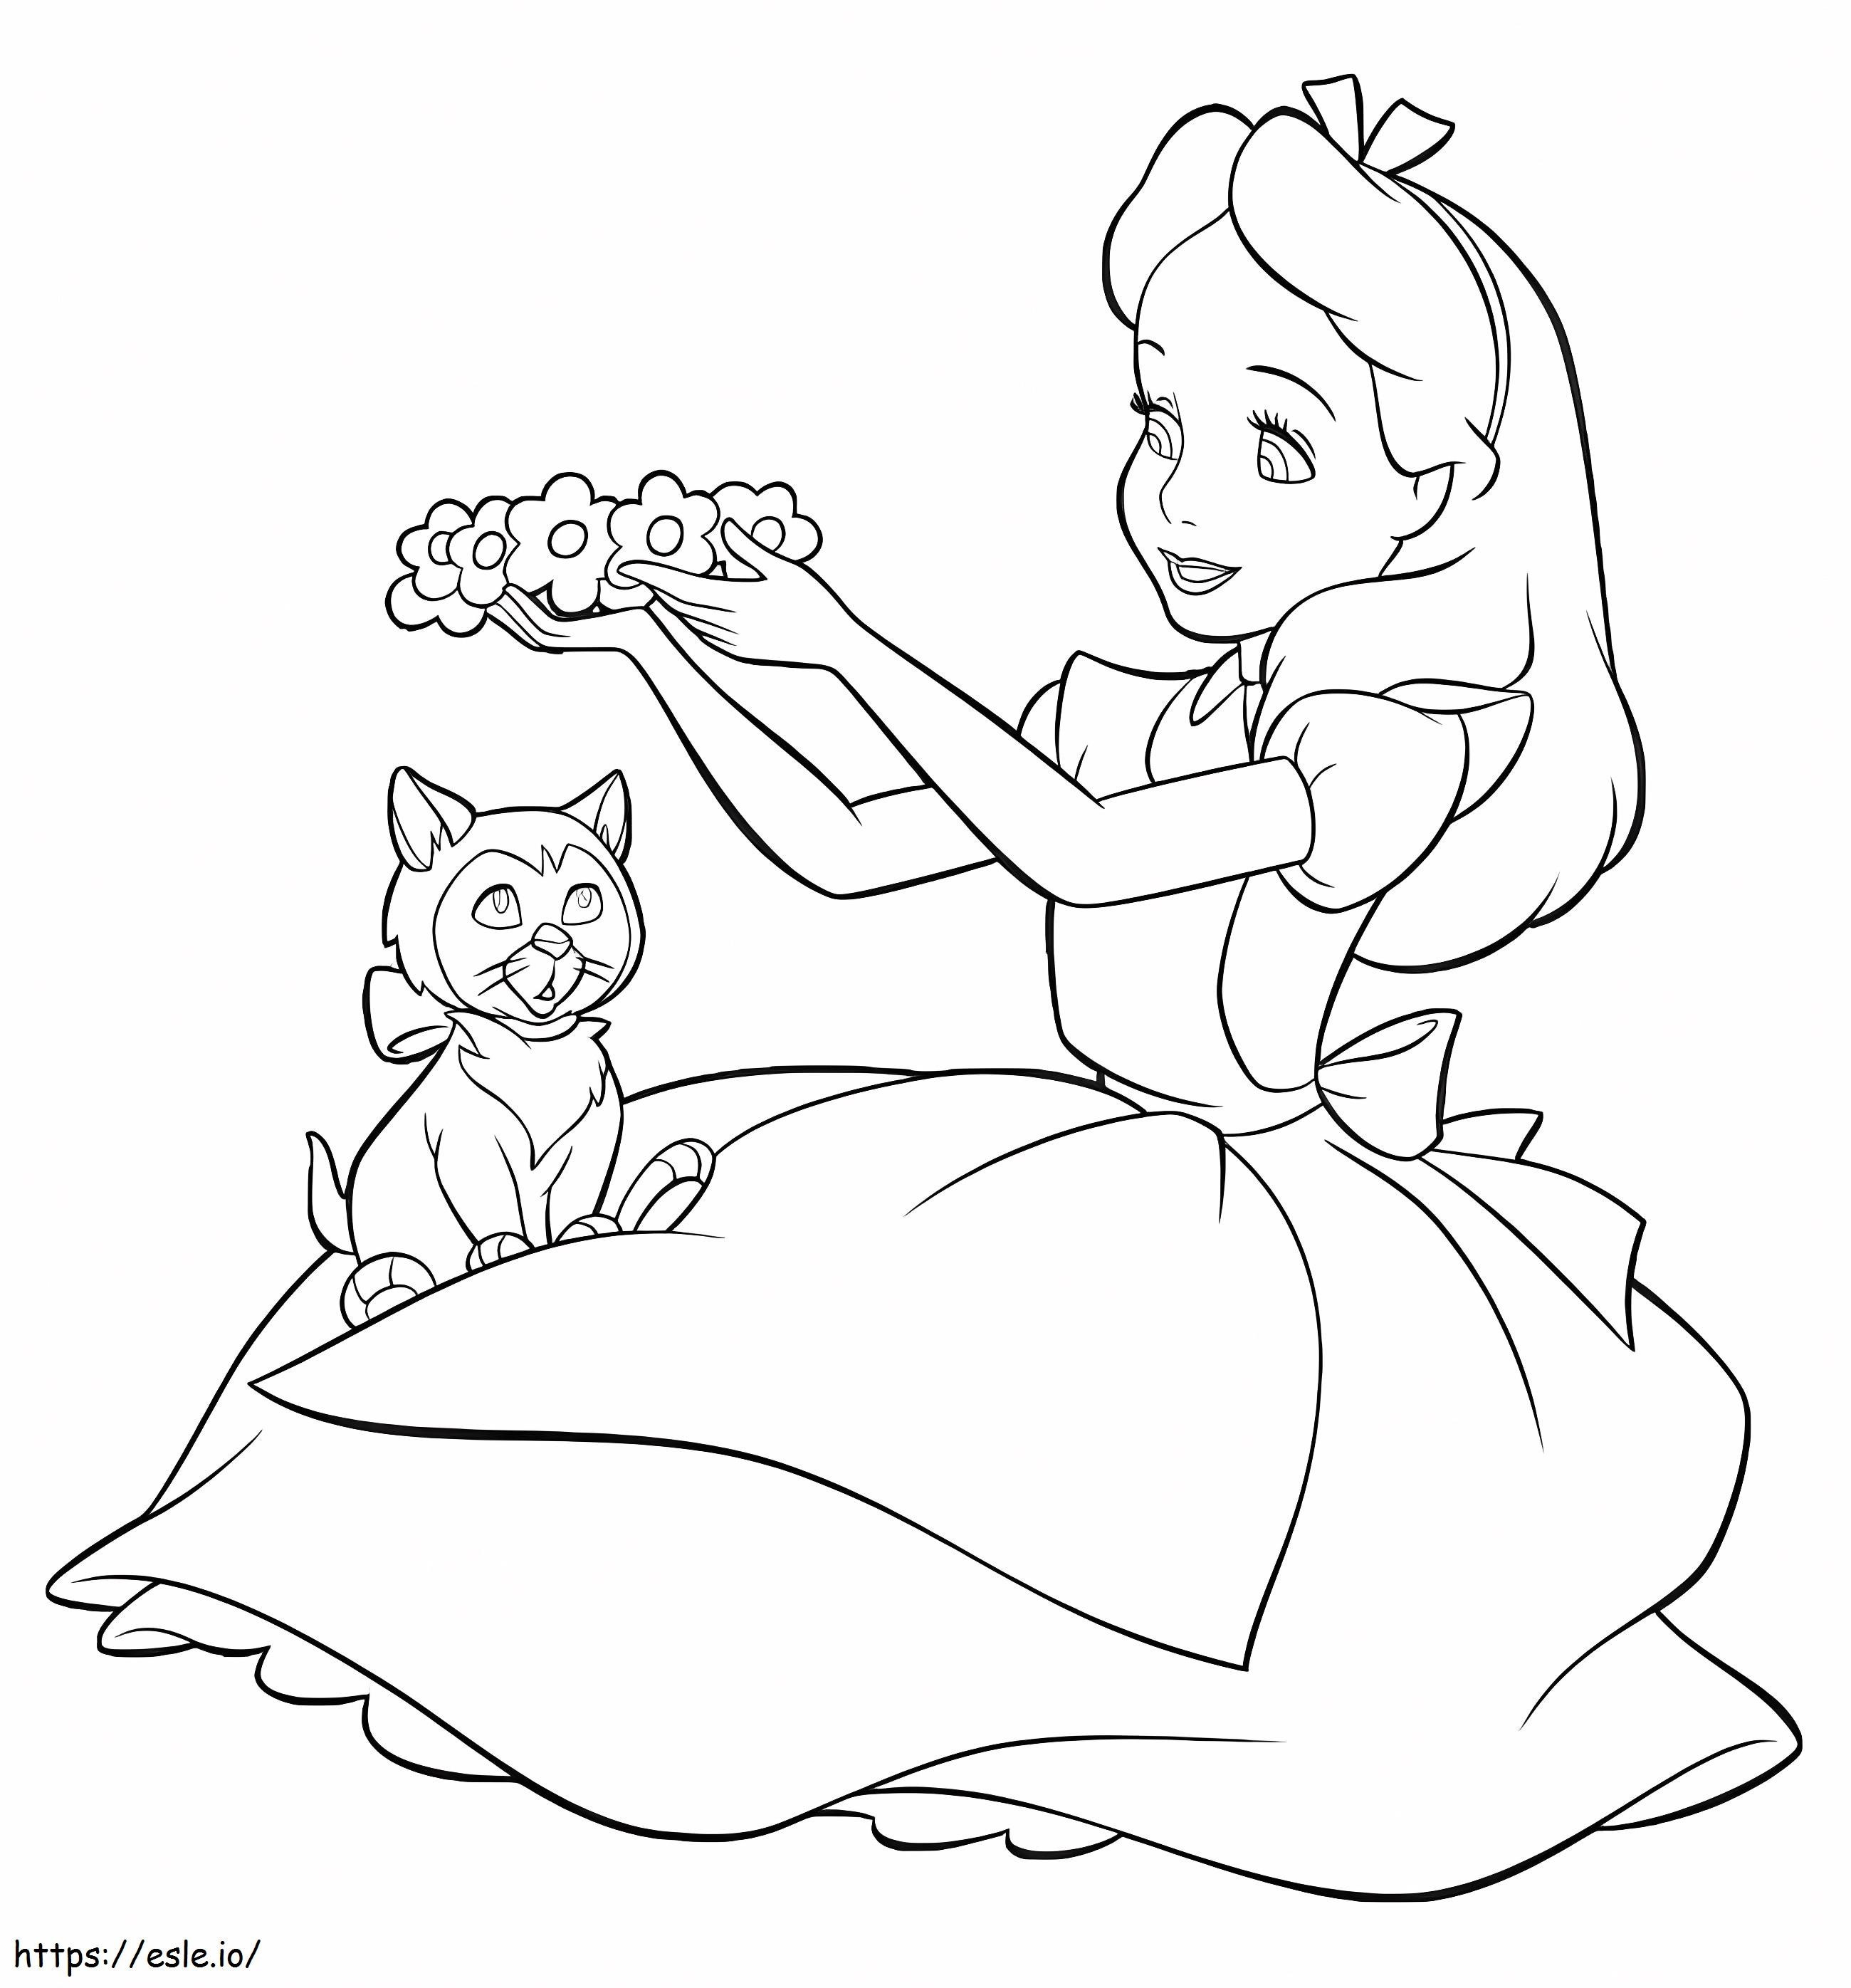 Alice und Kätzchen ausmalbilder